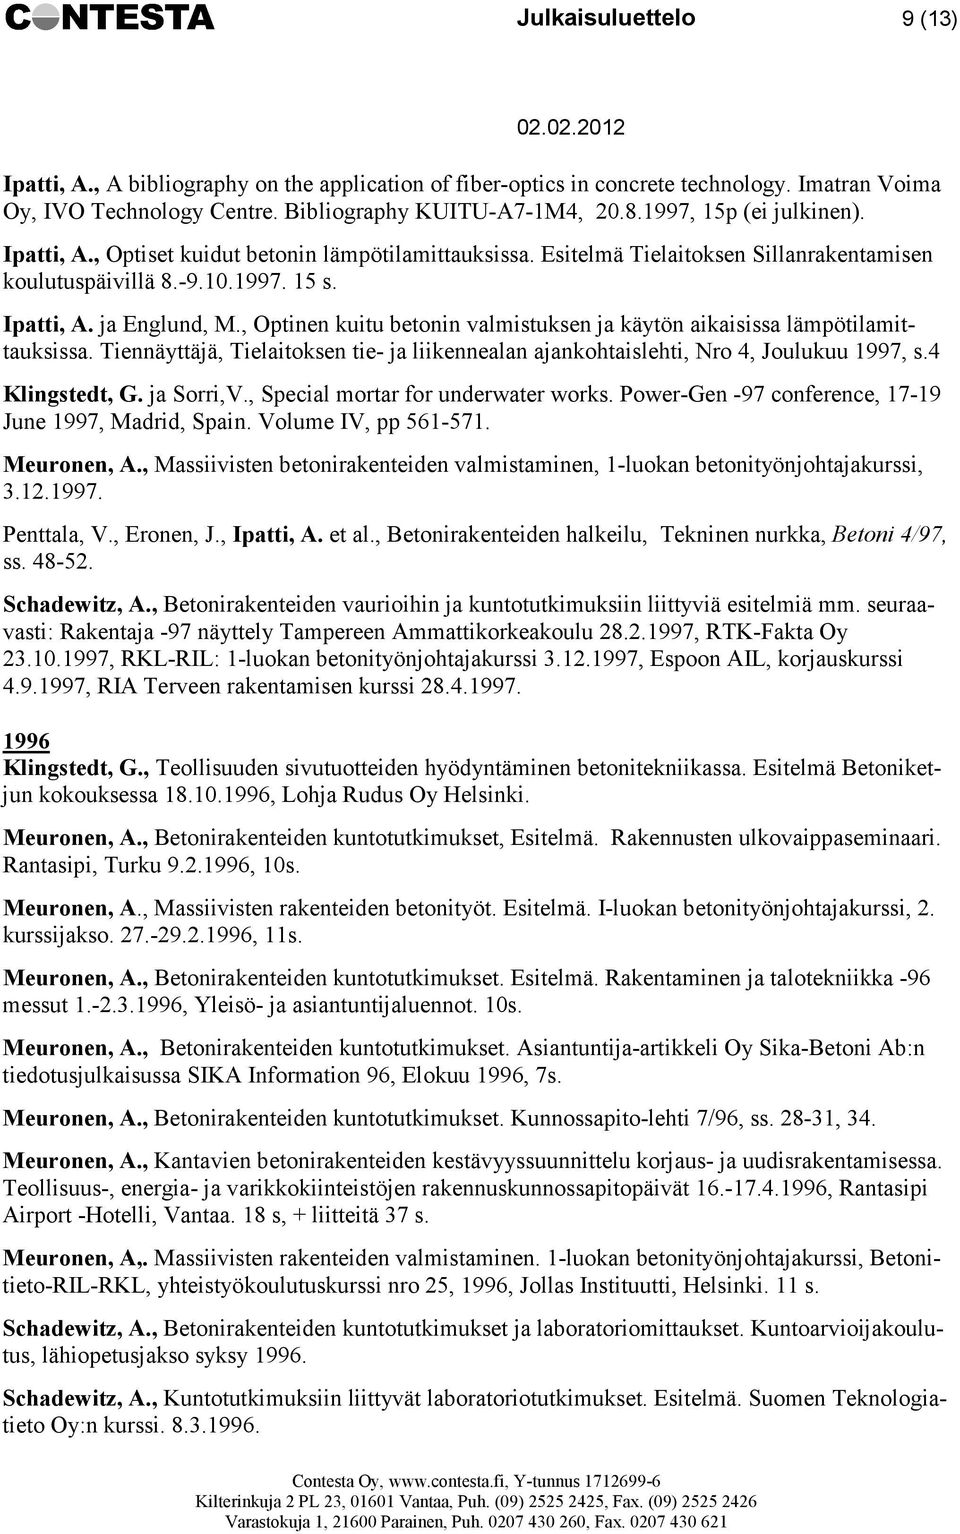 , Optinen kuitu betonin valmistuksen ja käytön aikaisissa lämpötilamittauksissa. Tiennäyttäjä, Tielaitoksen tie- ja liikennealan ajankohtaislehti, Nro 4, Joulukuu 1997, s.4 Klingstedt, G. ja Sorri,V.